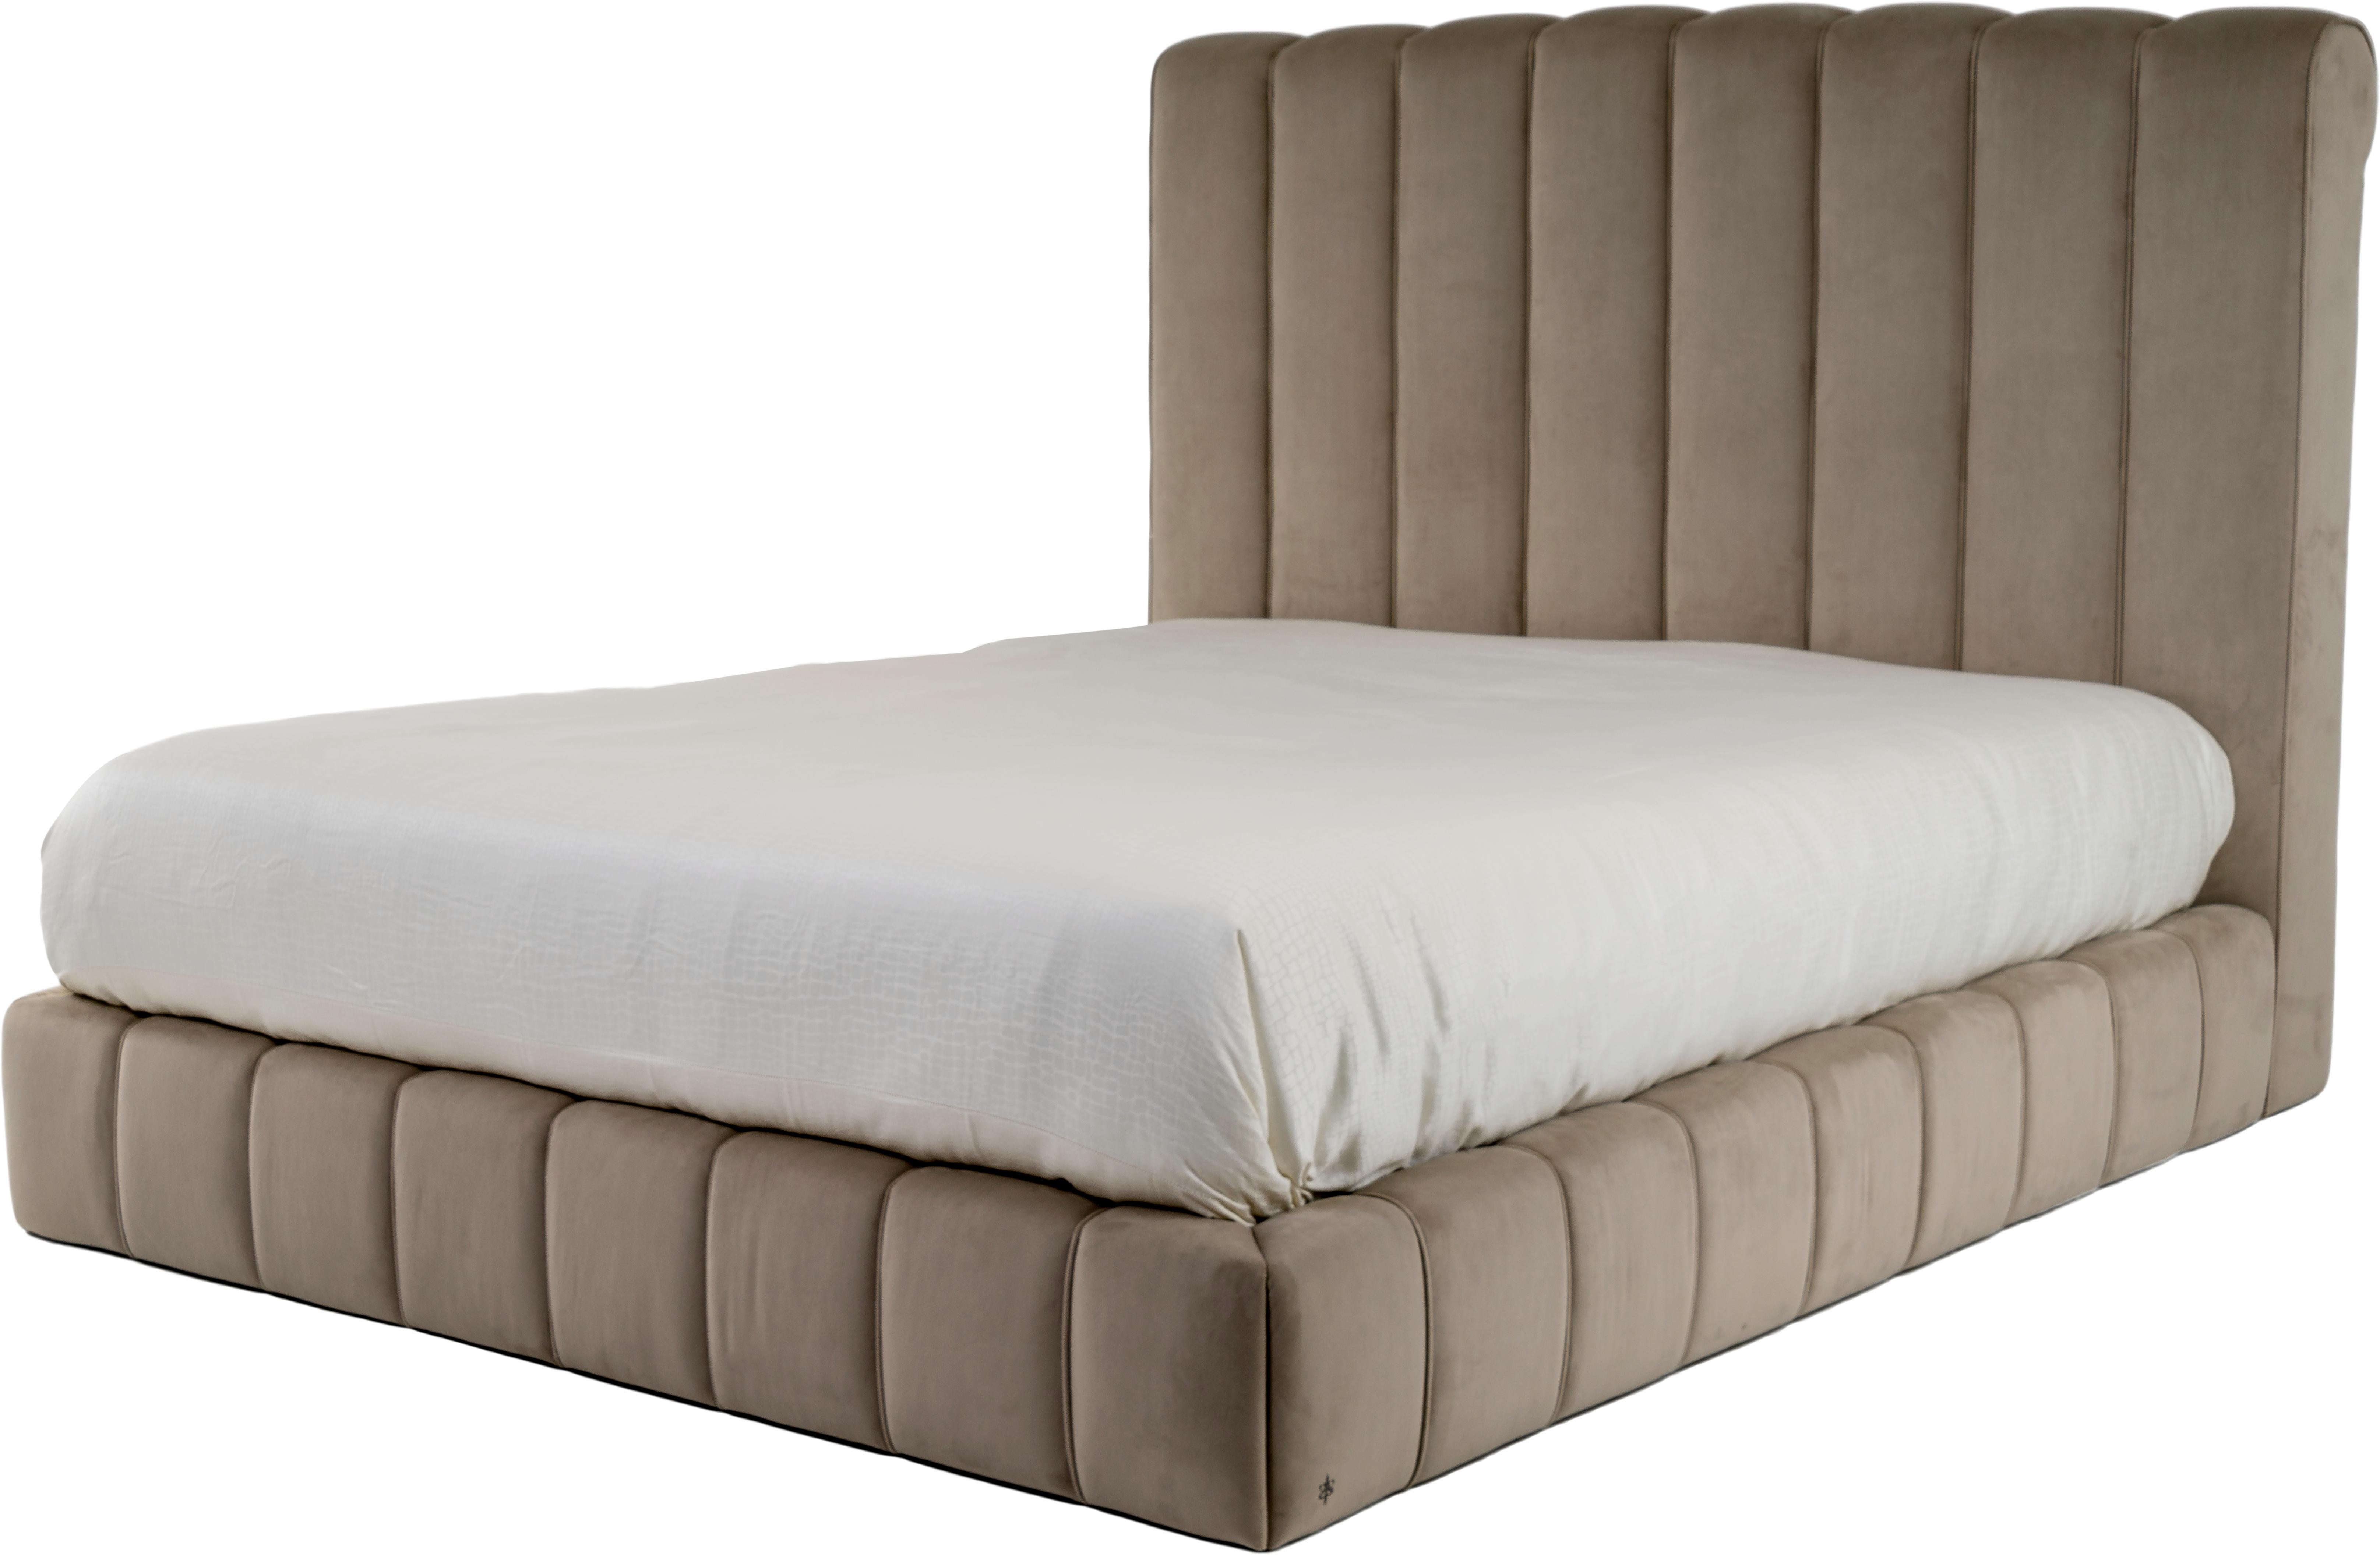 Elegance et simplicité, le lit Brisa est une combinaison de tête de lit et de base entièrement rembourrée.

Pour un matelas de 180x200cm (lit californien king). Disponible en trois tailles différentes sur demande.
Le matelas et les sommiers ne sont